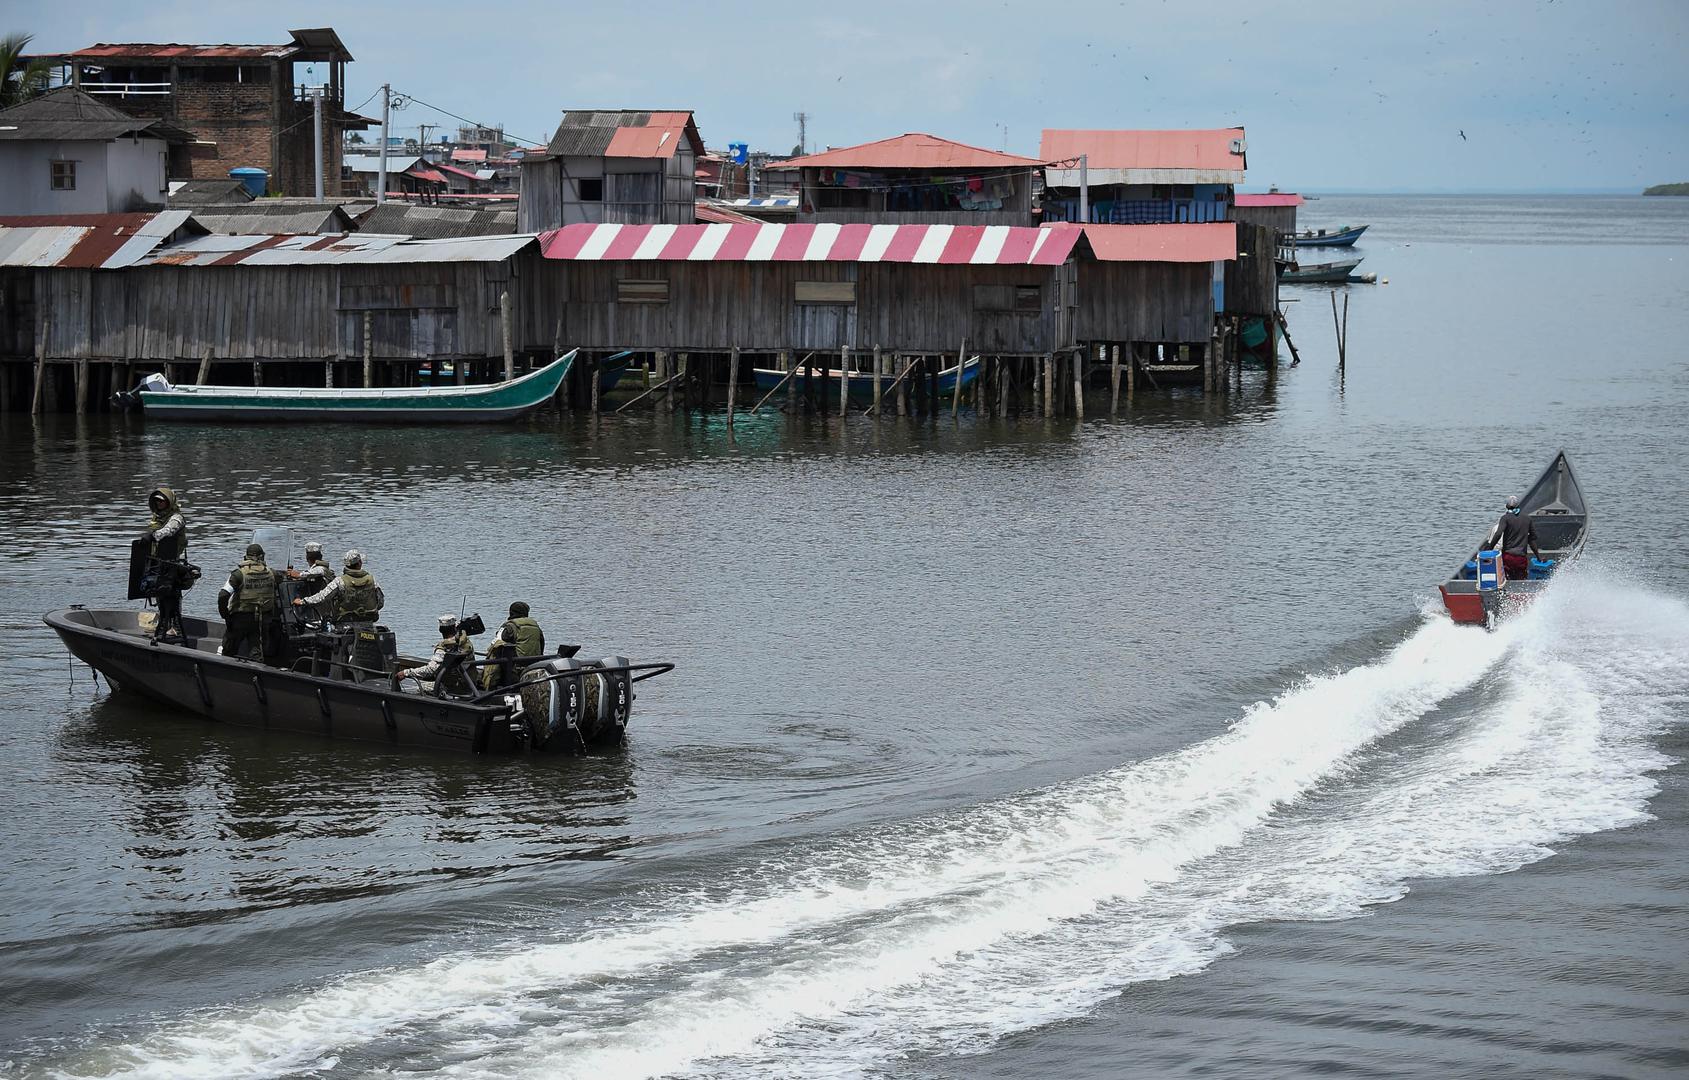 Miembros de la armada colombiana patrullan las aguas del municipio de Tumaco, en el departamento de Nariño, en la costa pacífica de Colombia, el 14 de abril de 2018, en el contexto de una operación militar desplegada por Ecuador y Colombia contra el grupo